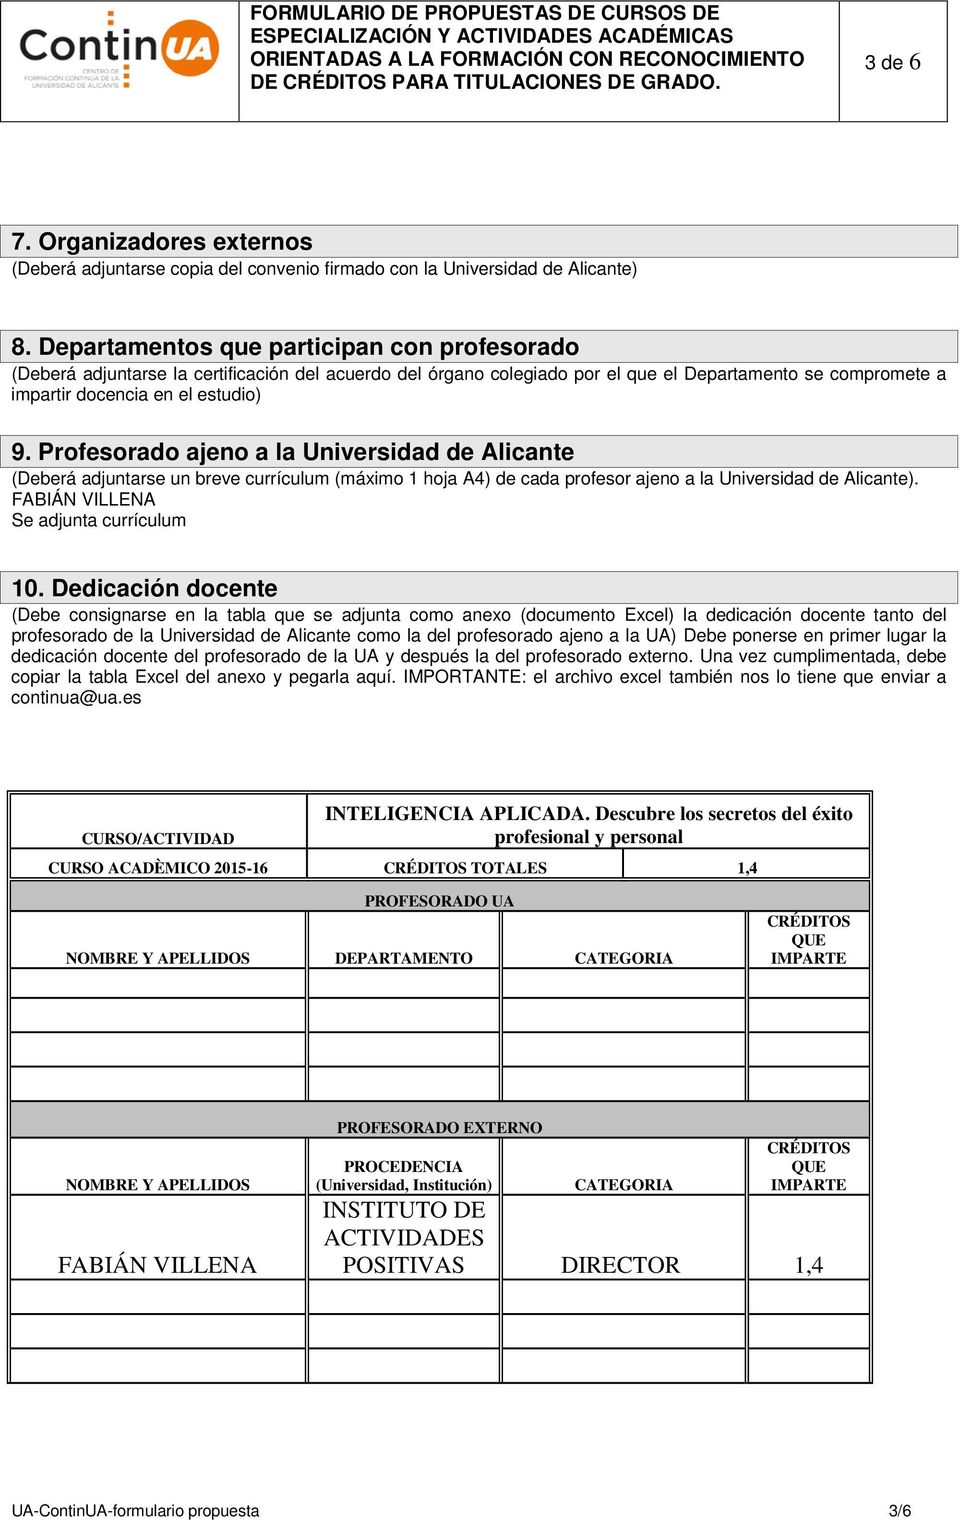 Profesorado ajeno a la Universidad de Alicante (Deberá adjuntarse un breve currículum (máximo 1 hoja A4) de cada profesor ajeno a la Universidad de Alicante). FABIÁN VILLENA Se adjunta currículum 10.